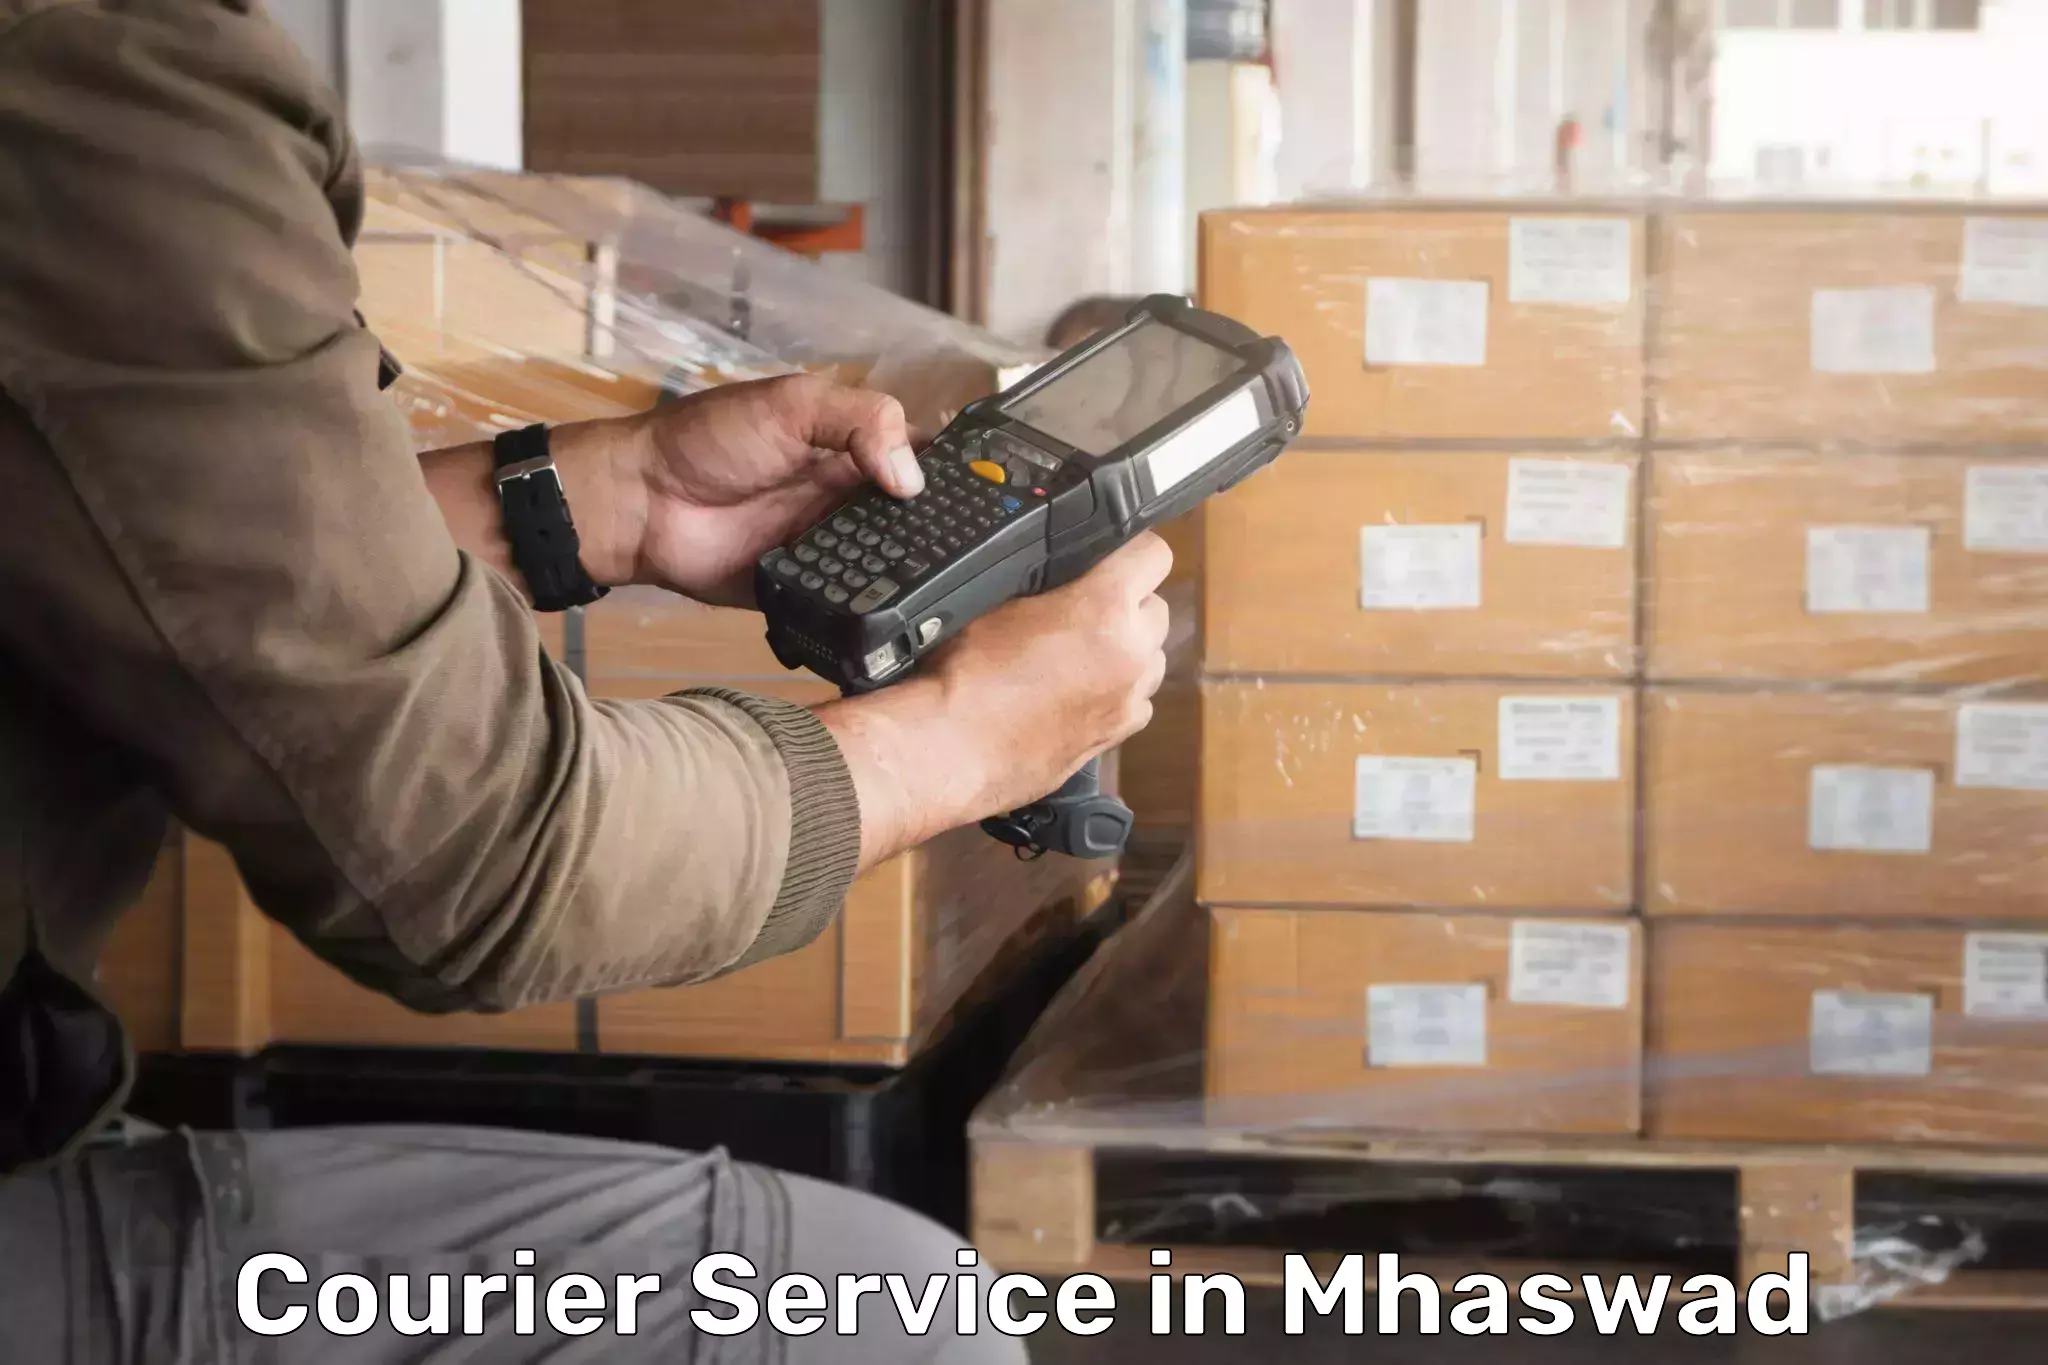 Efficient logistics management in Mhaswad